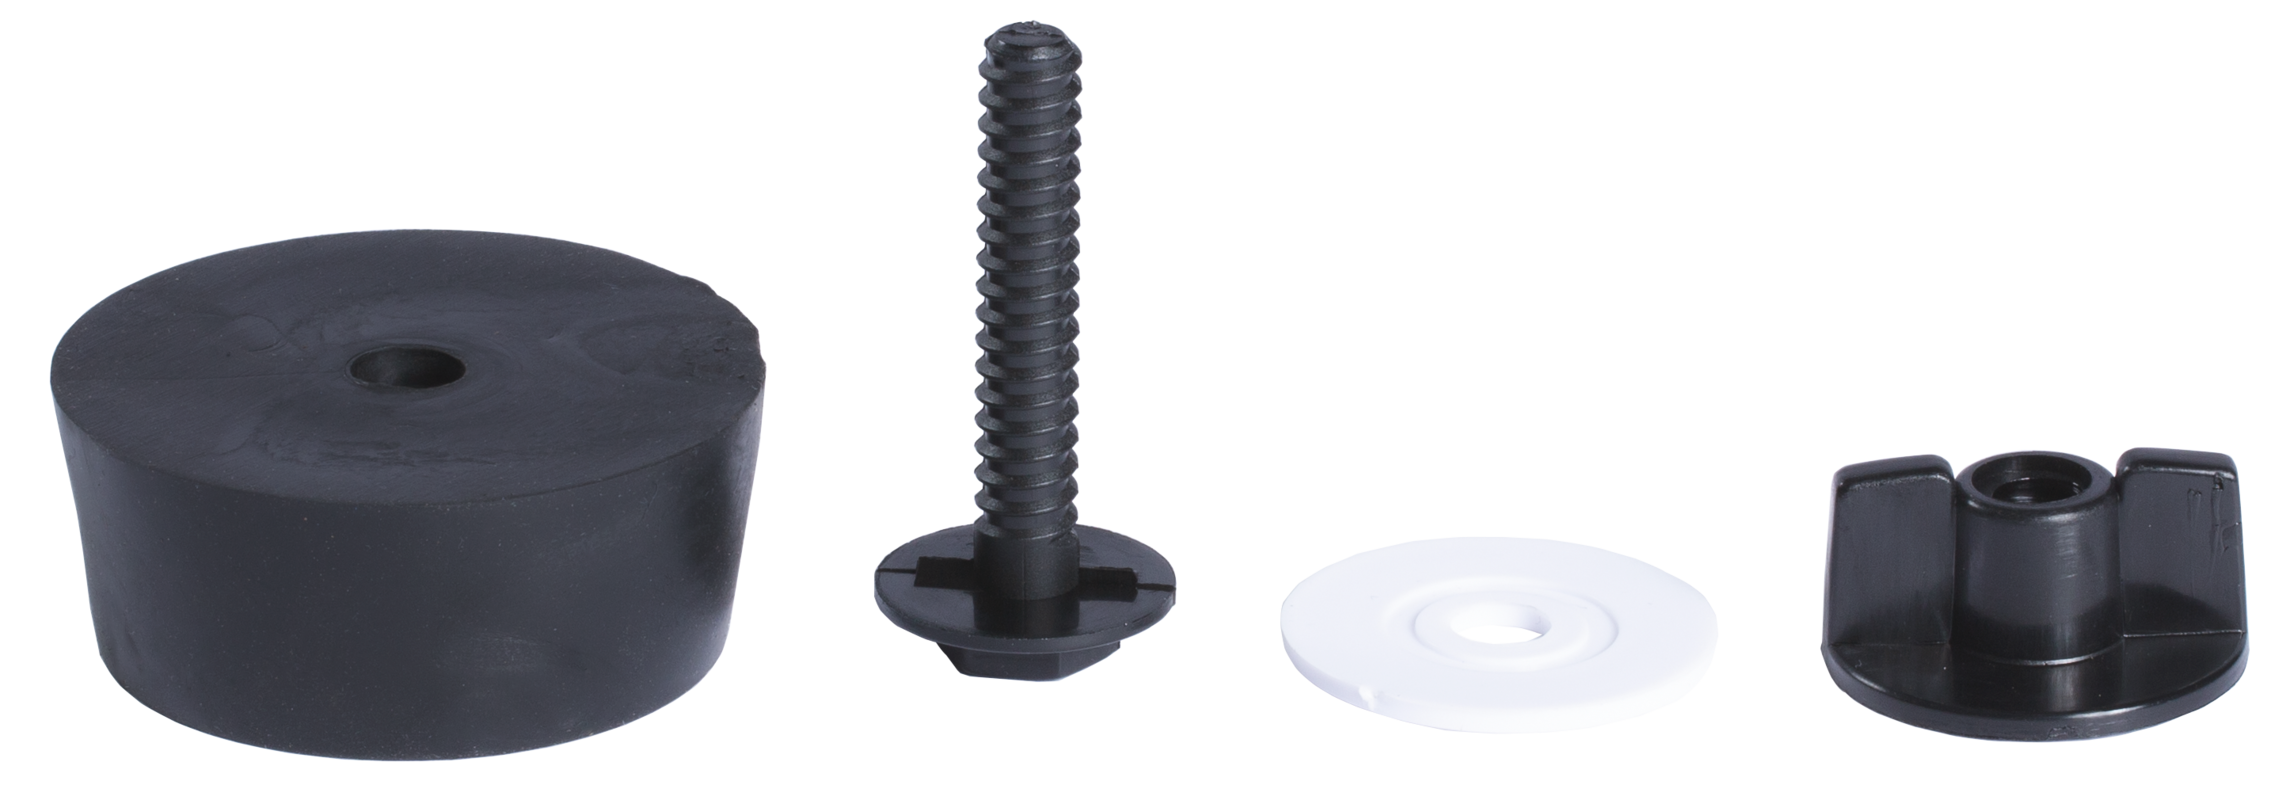 Ablassstopfen für Balltränke Compact Durchmesser 55/62 mm